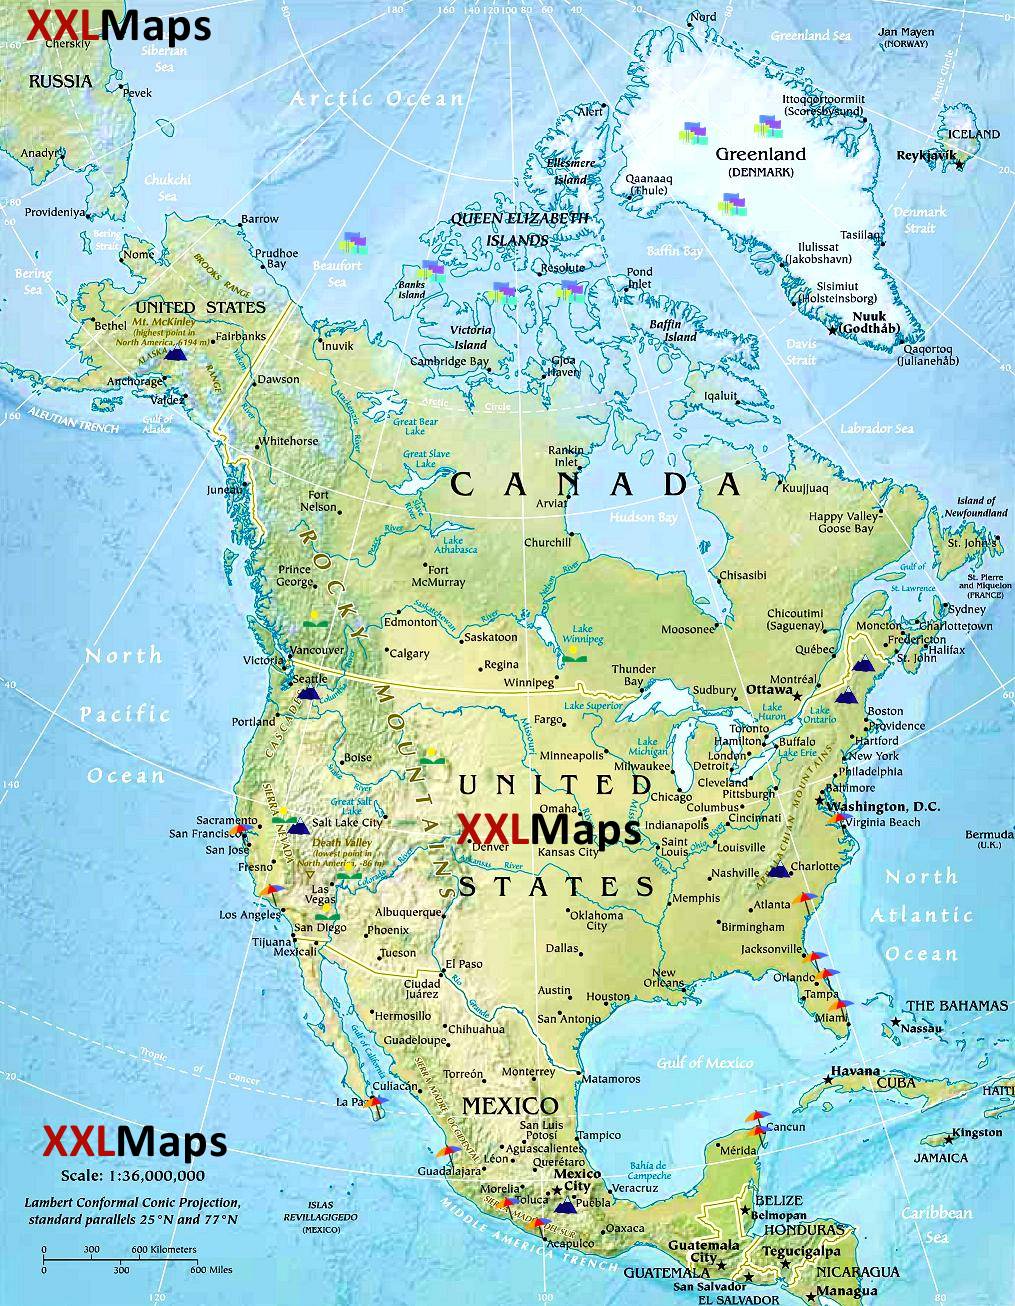 Mapa físico de América del Norte